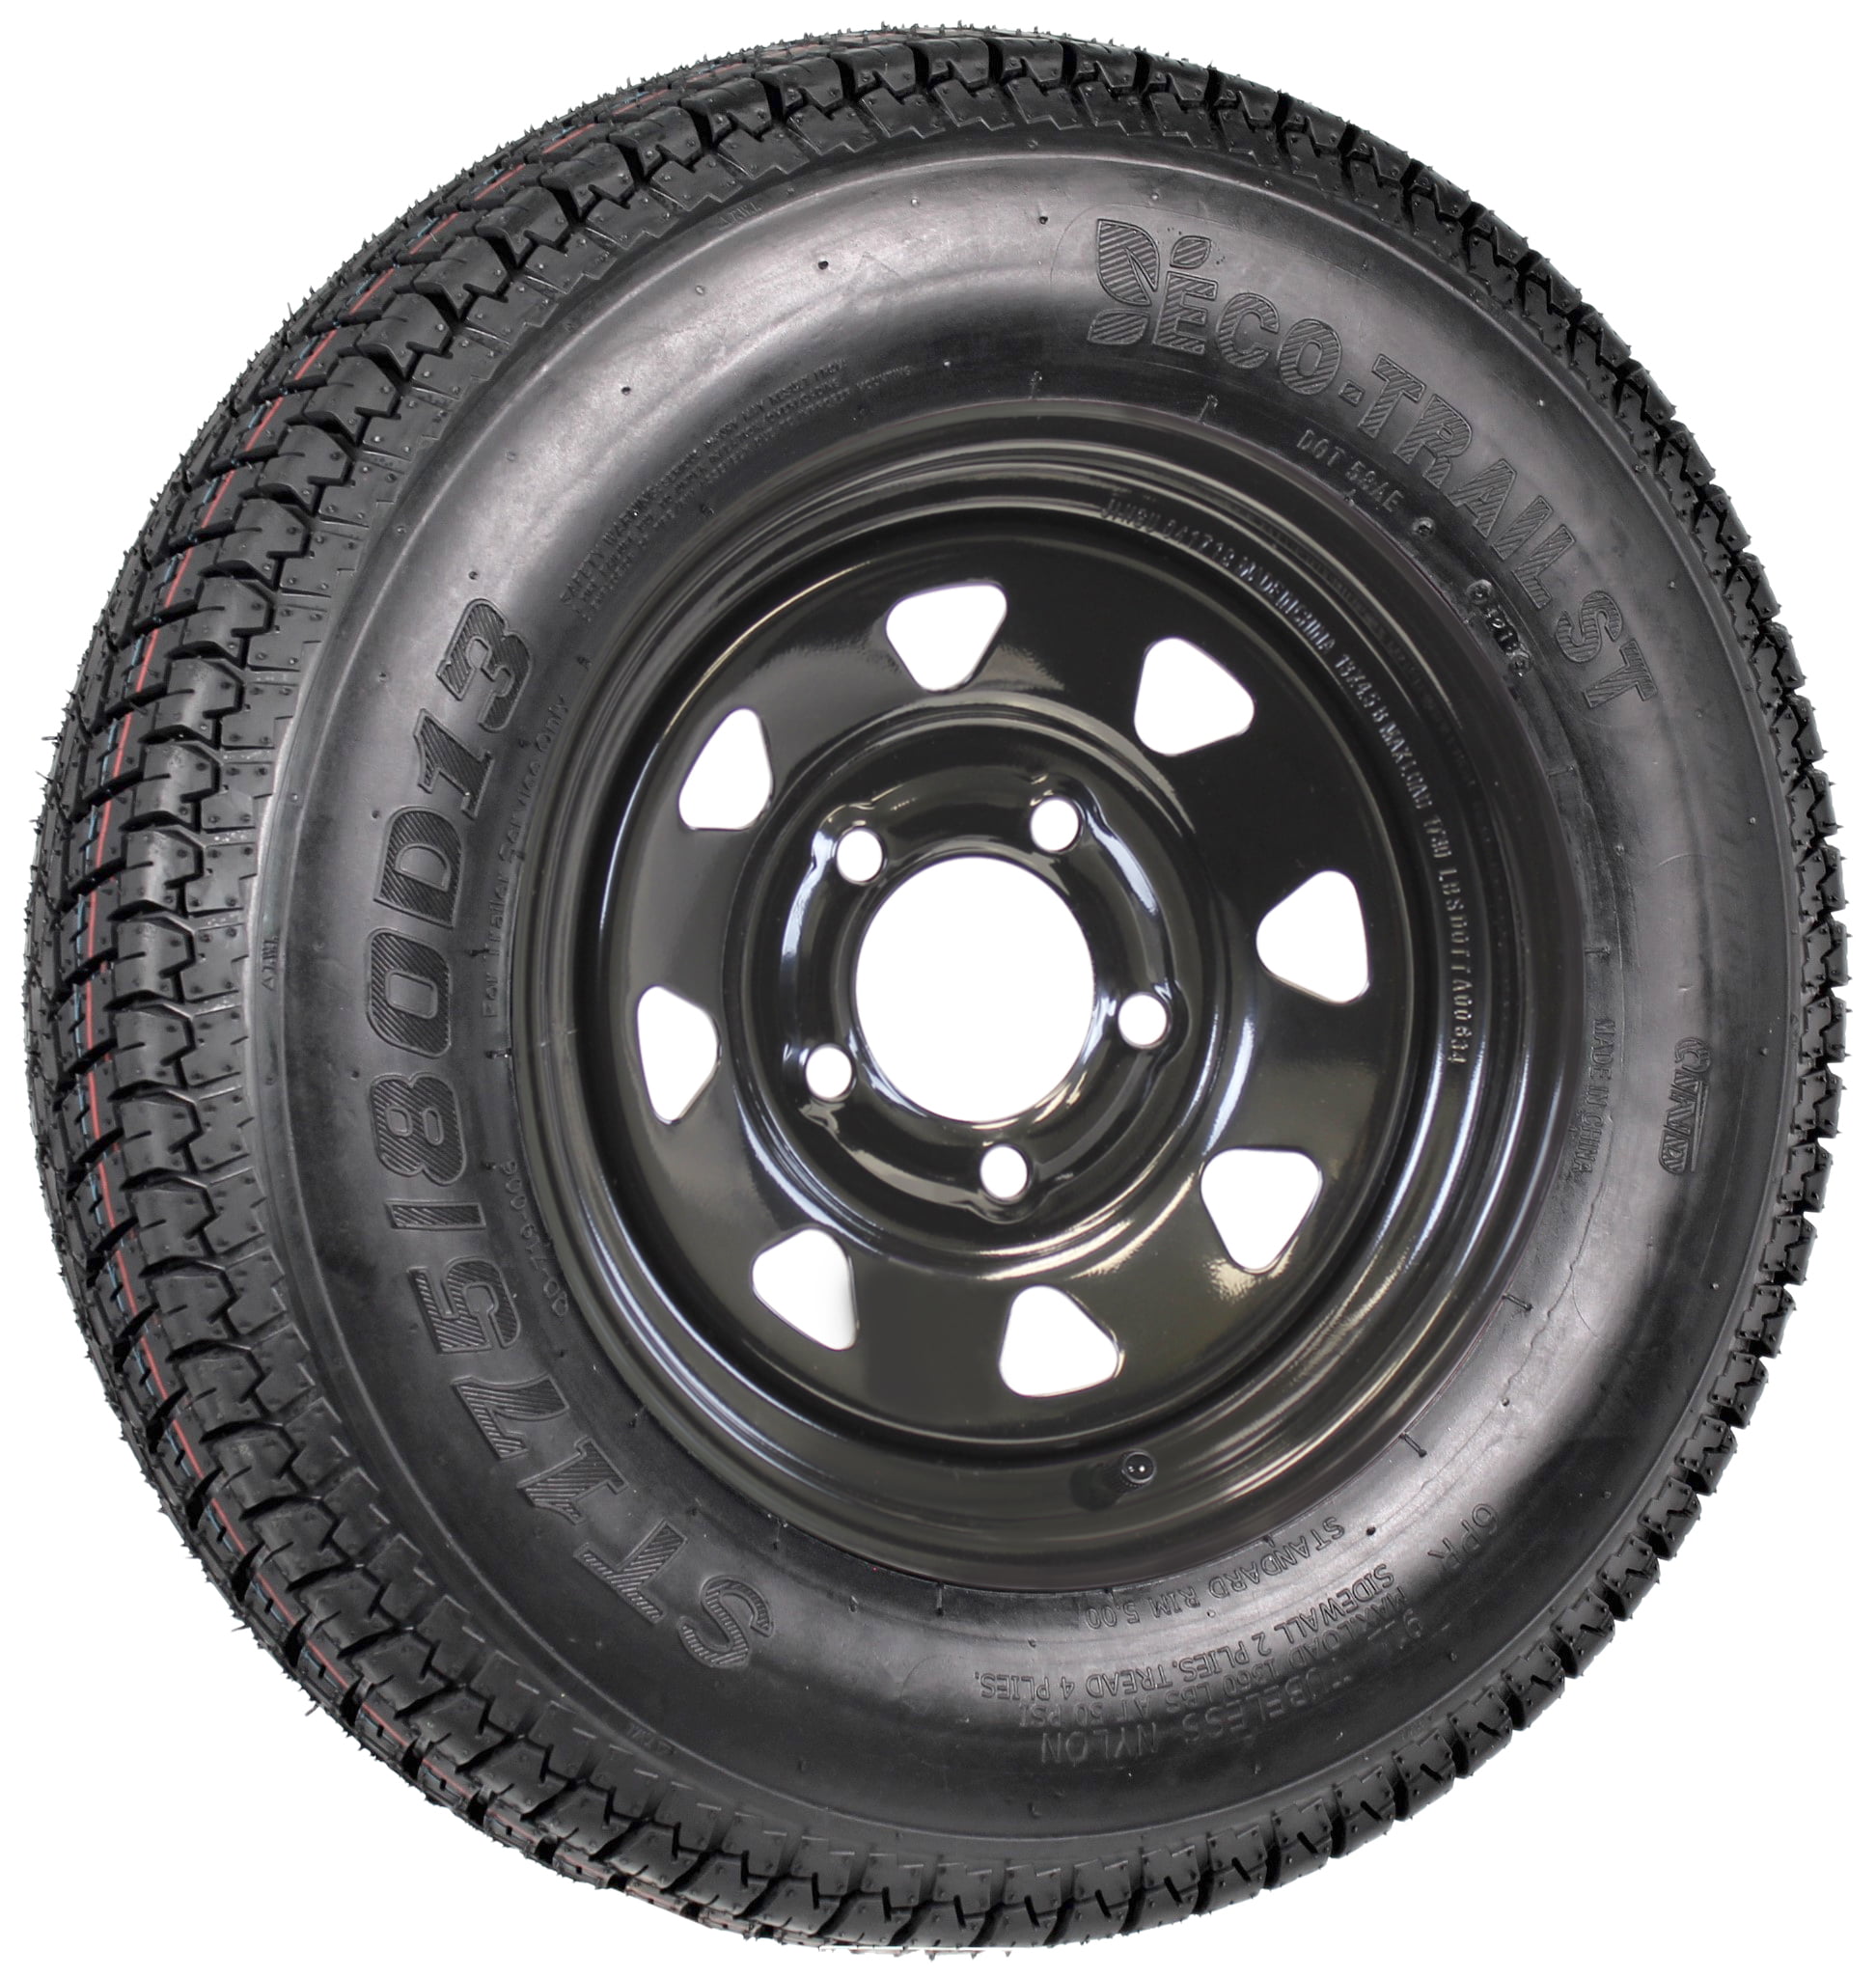 2-Pk Trailer Tire On Rim Bias Ply ST175/80D13 175/80 LRC 5-4.5 Black Spoke  Wheel